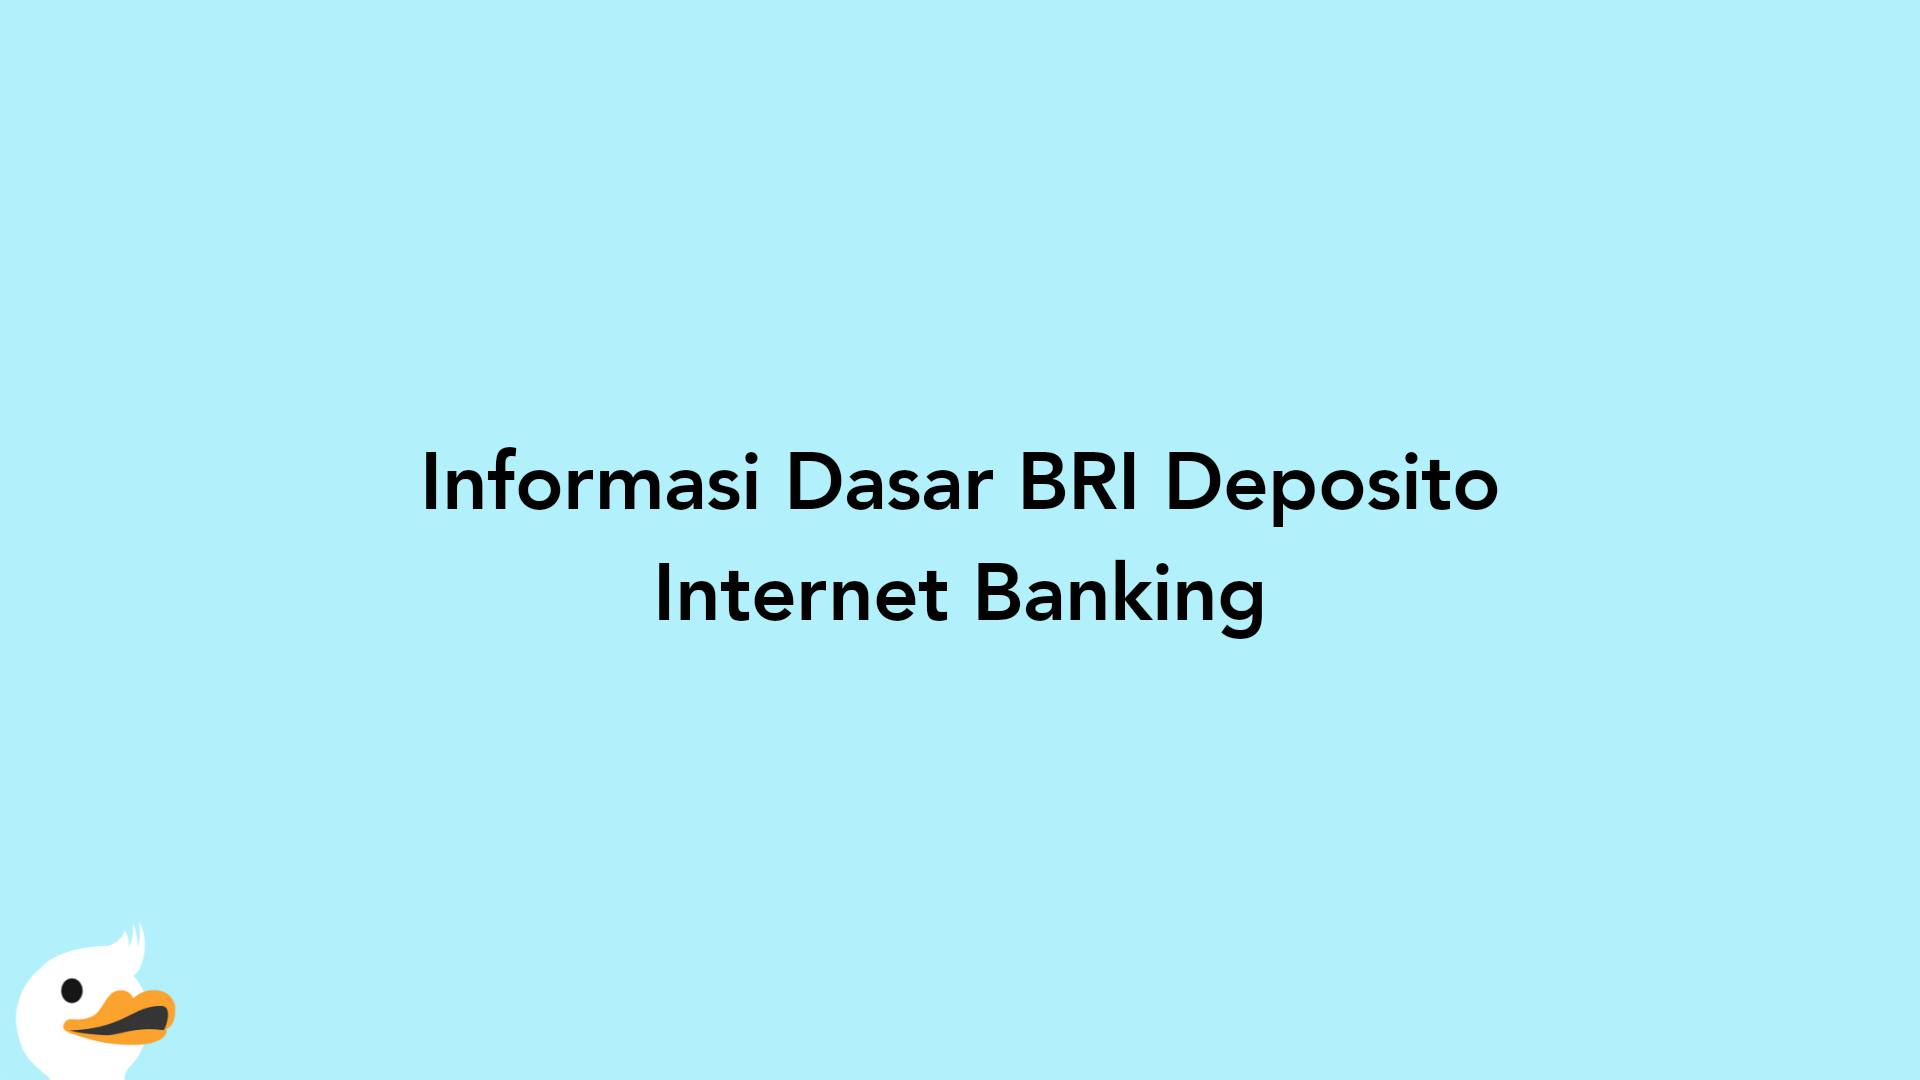 Informasi Dasar BRI Deposito Internet Banking